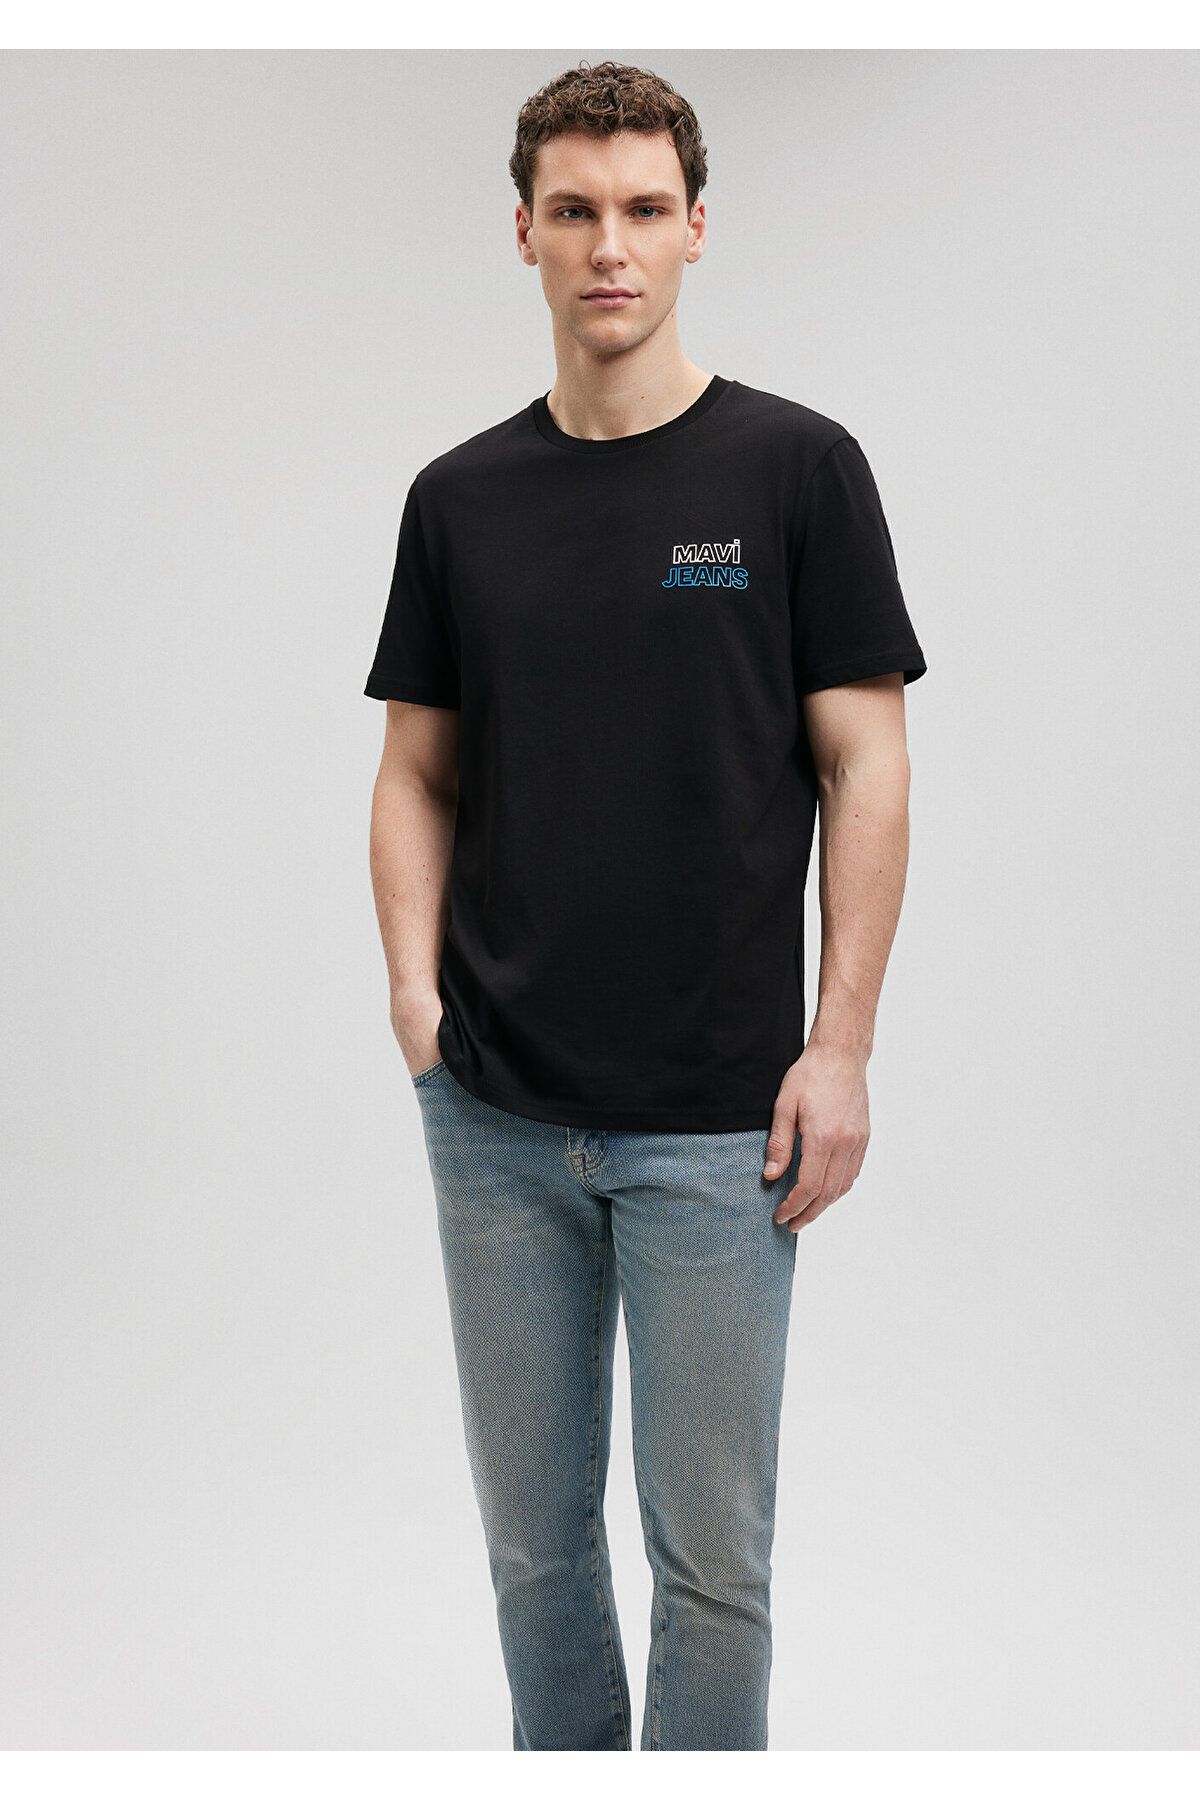 Mavi Jeans Baskılı Siyah Tişört Slim Fit / Dar Kesim 066841-900